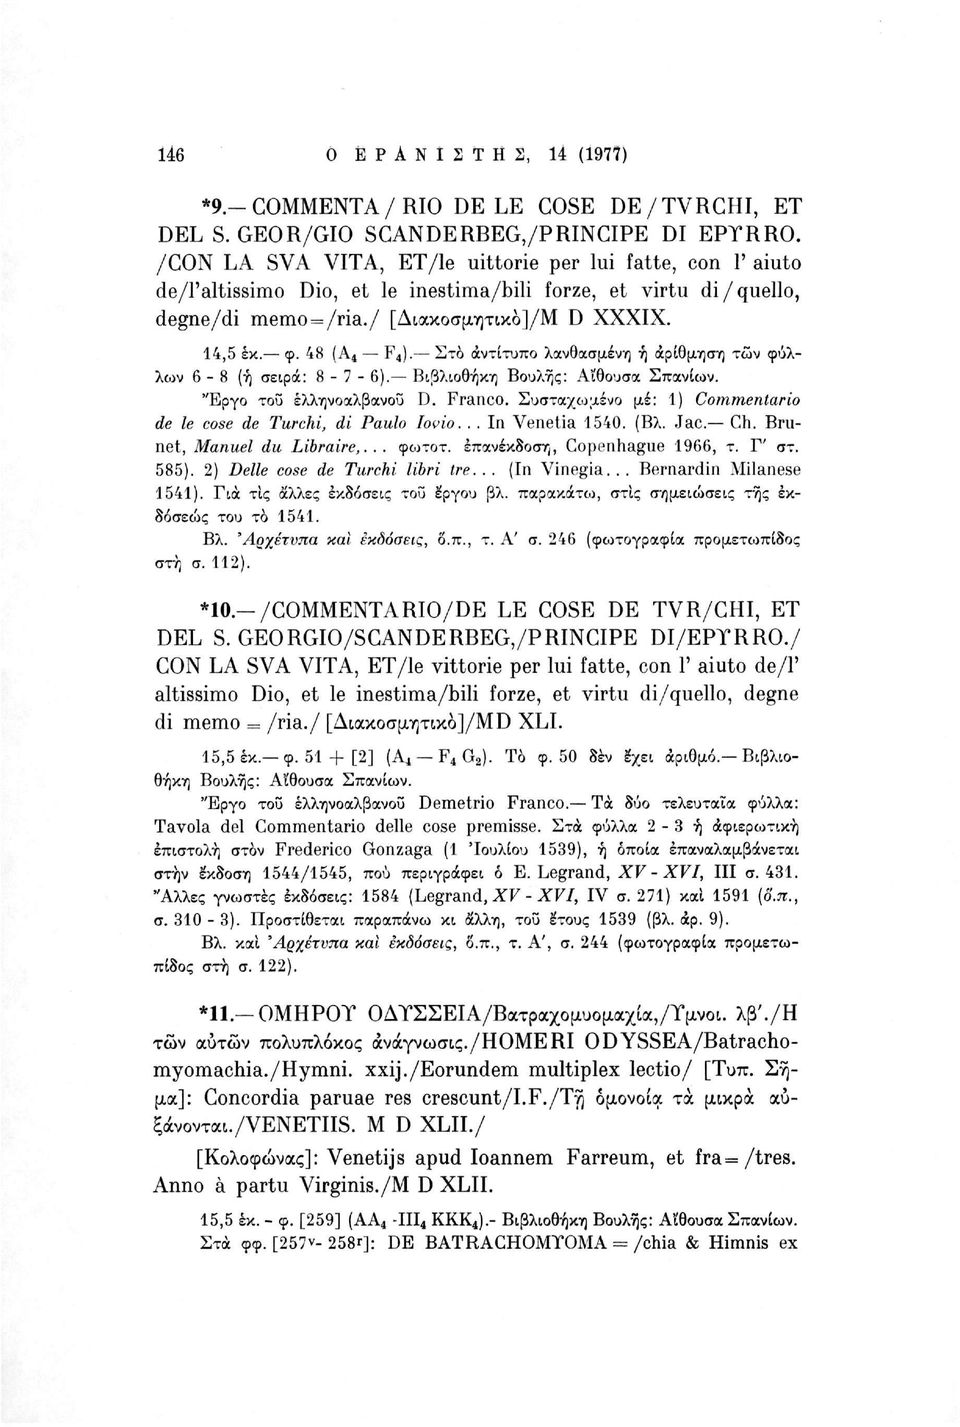 Στο αντίτυπο λανθασμένη ή αρίθμηση των φύλλων 6-8 (ή σειρά: 8-7-6). Βιβλιοθήκη Βουλής: Αίθουσα Σπανίων. "Εργο του έλληνοαλβανοΰ D. Franco.